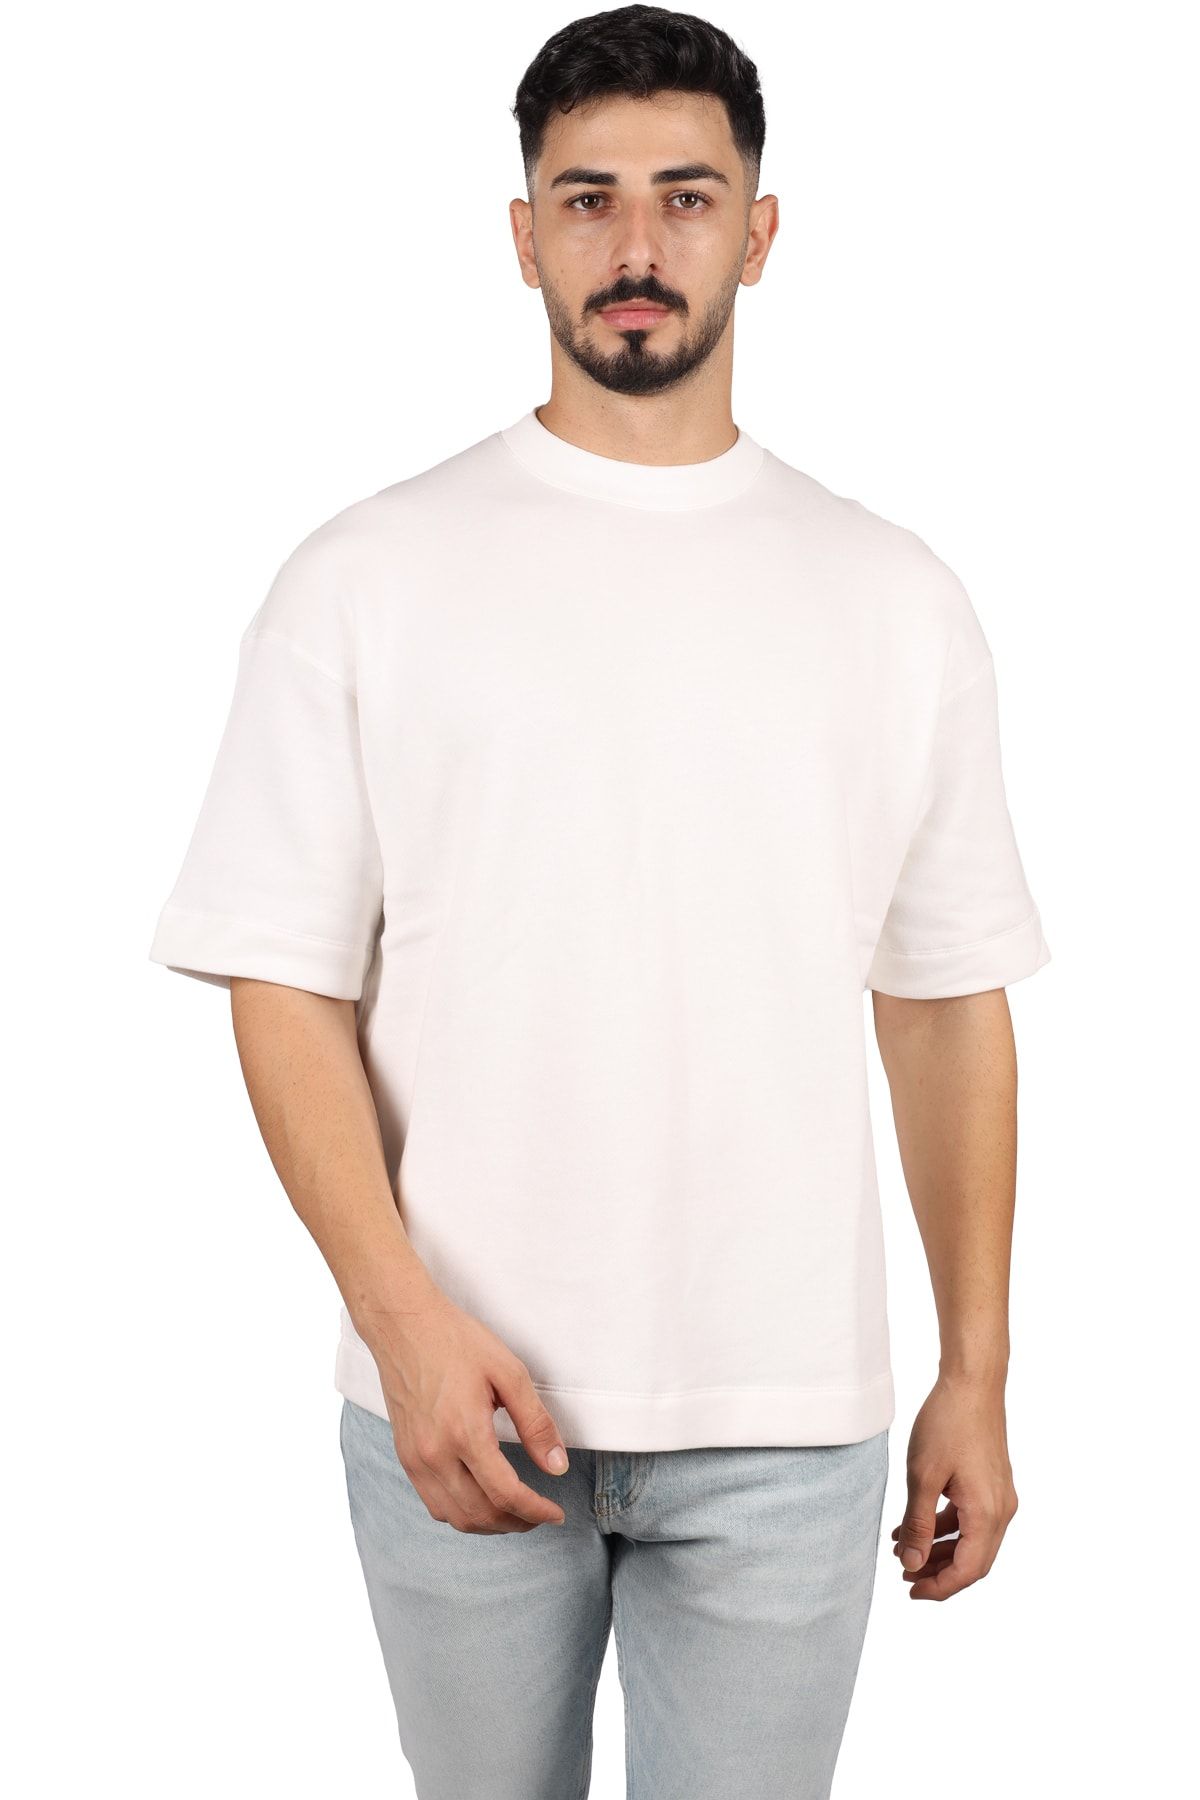 Emporio Armani Erkek %100 Pamuklu Logolu Kısa Kollu Beyaz T-Shirt 3R1TBY 1JFBZ-0101